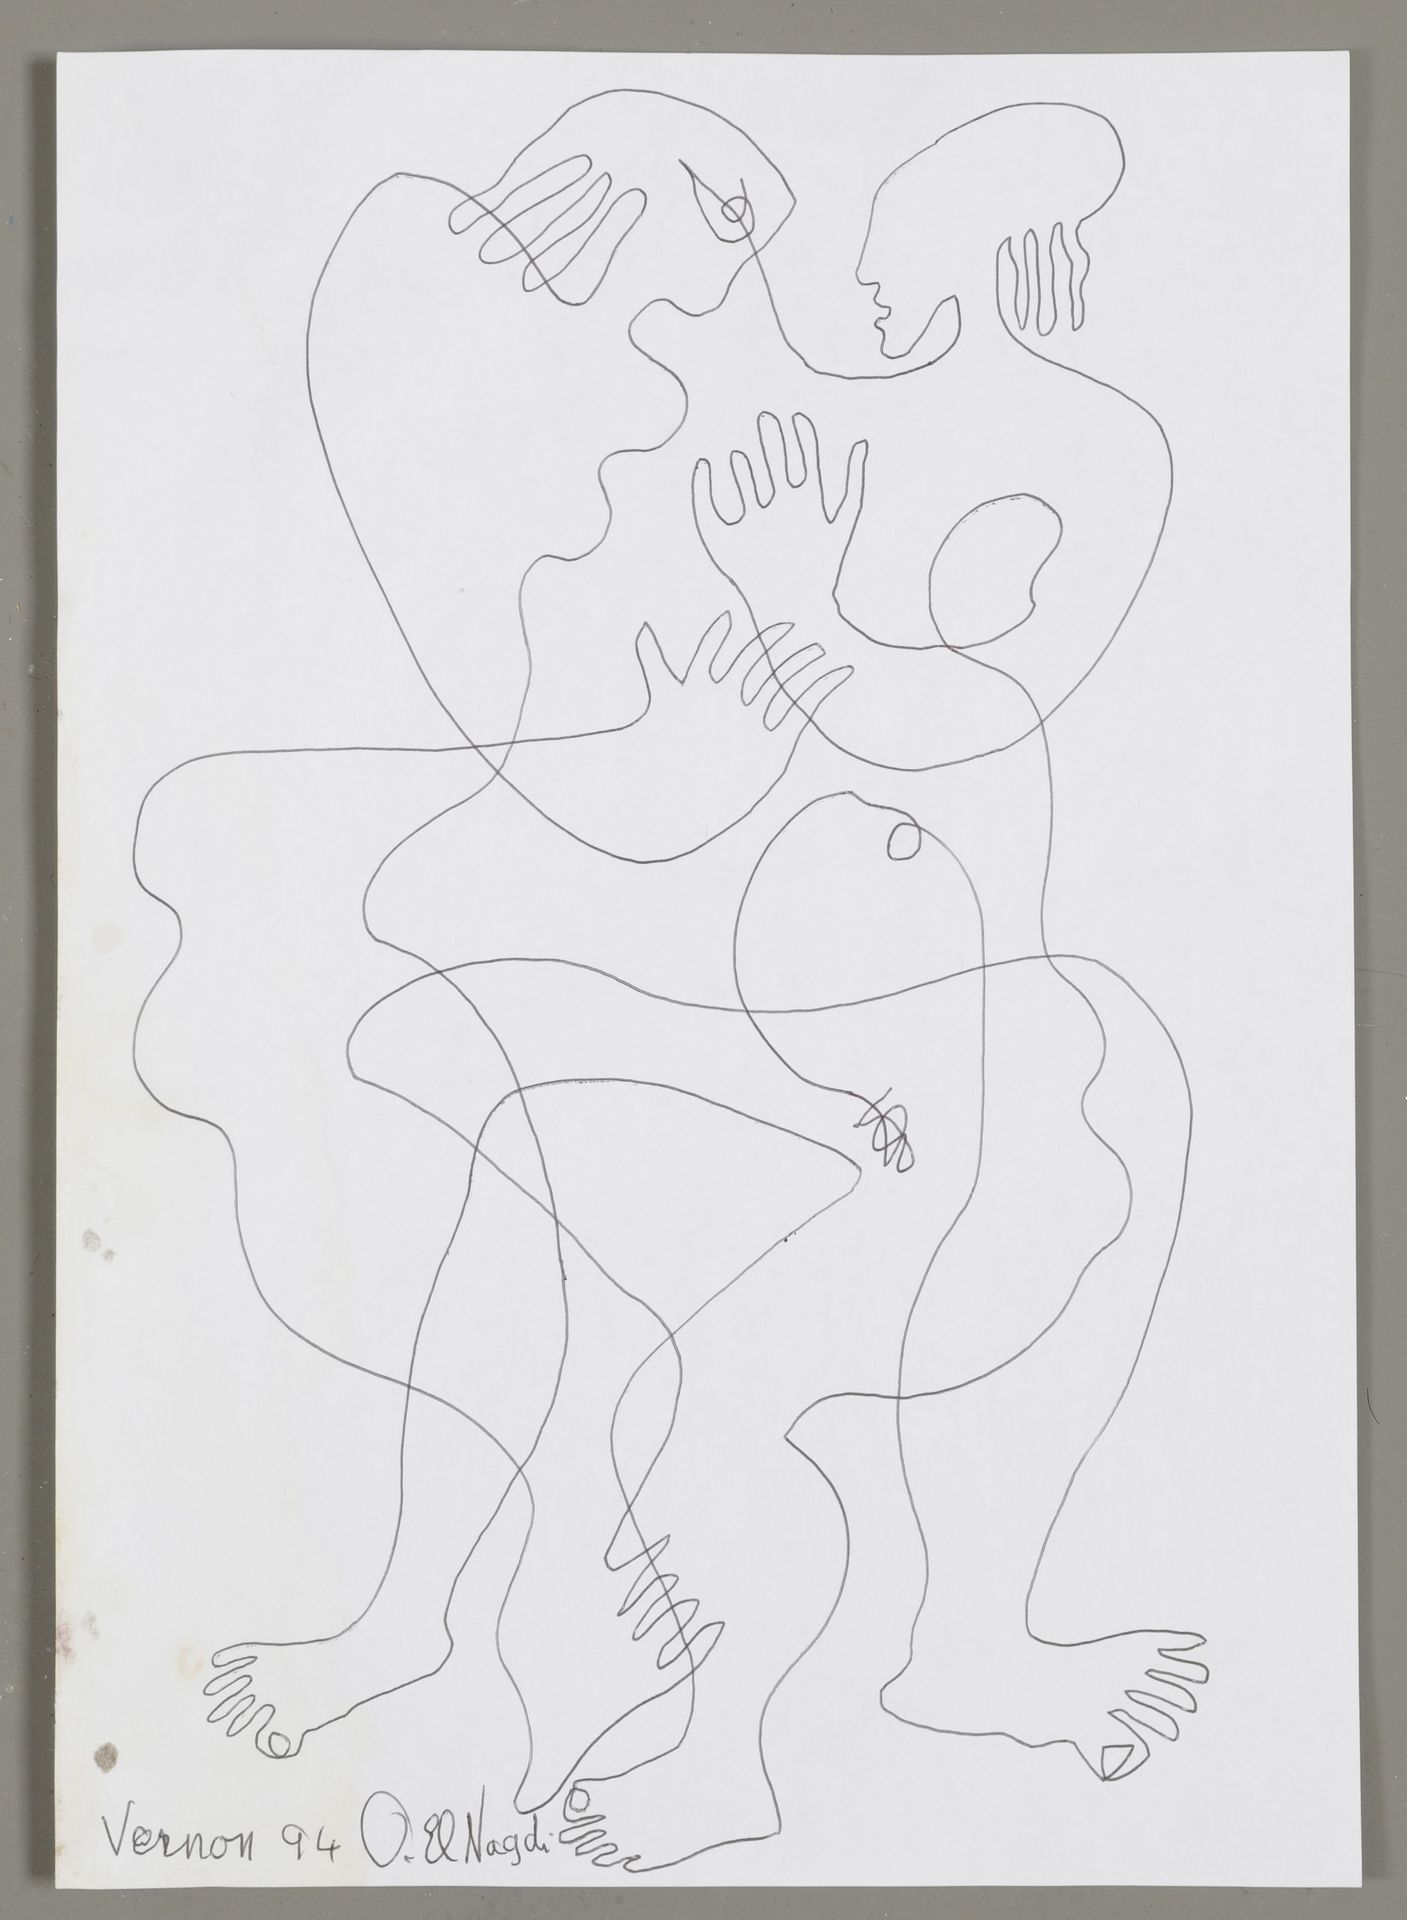 Null 奥马尔-埃尔-纳吉（1931-2019）。恋人》，1994年。有签名的Biros画作，位于 "Vernon"，左下方有日期。30 x 21 厘米